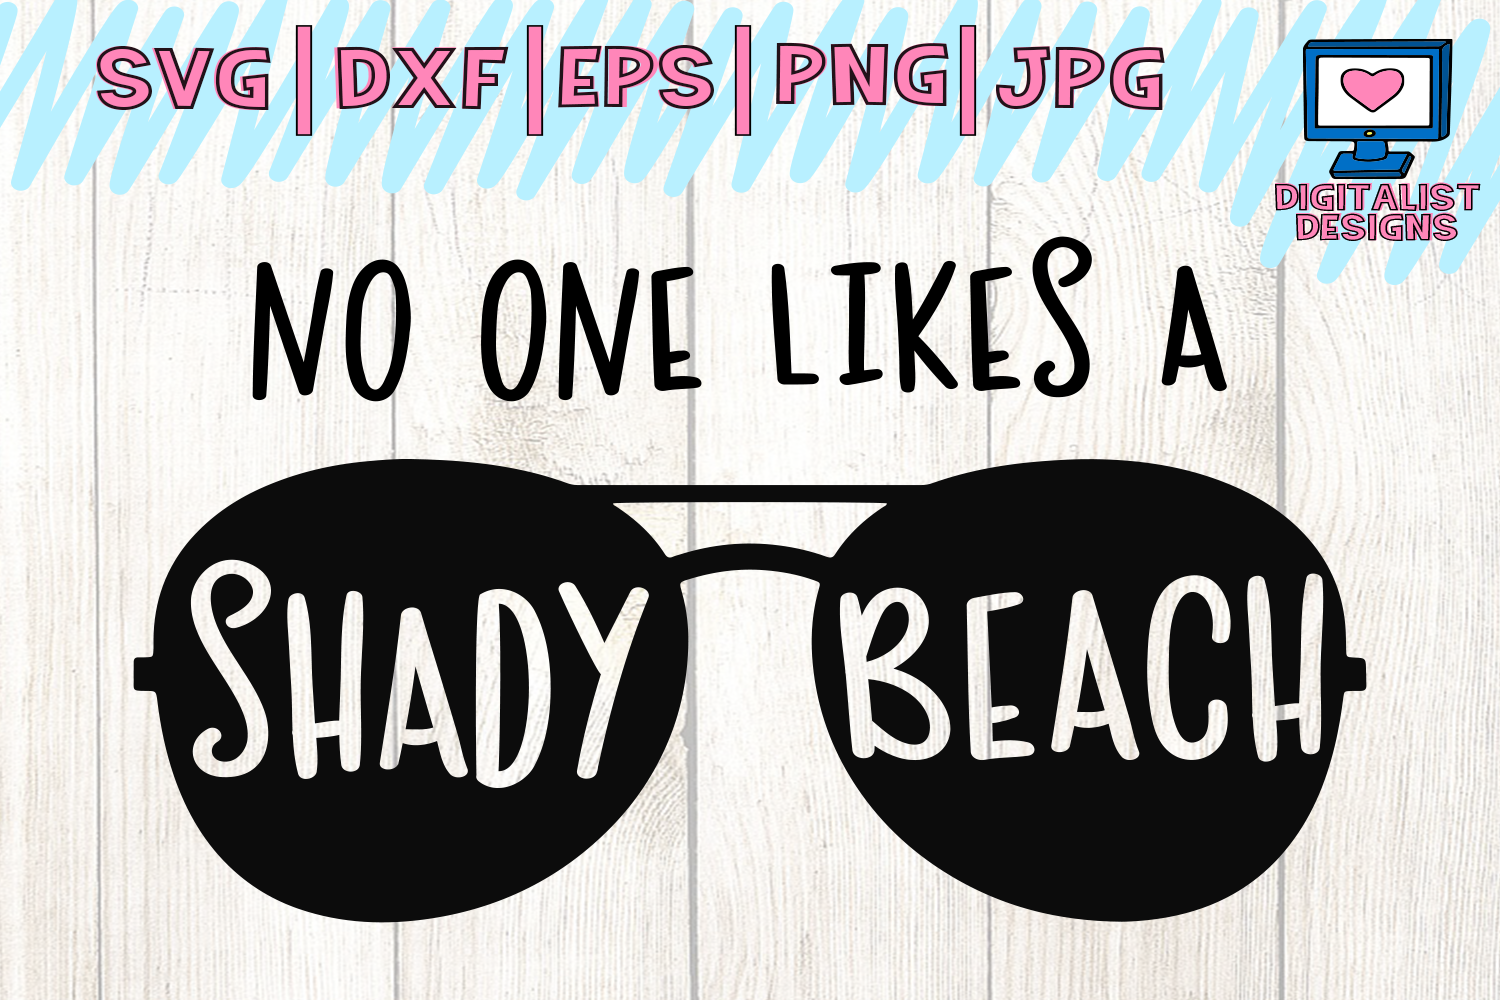 Free Free Summer Svg Designs 37 SVG PNG EPS DXF File